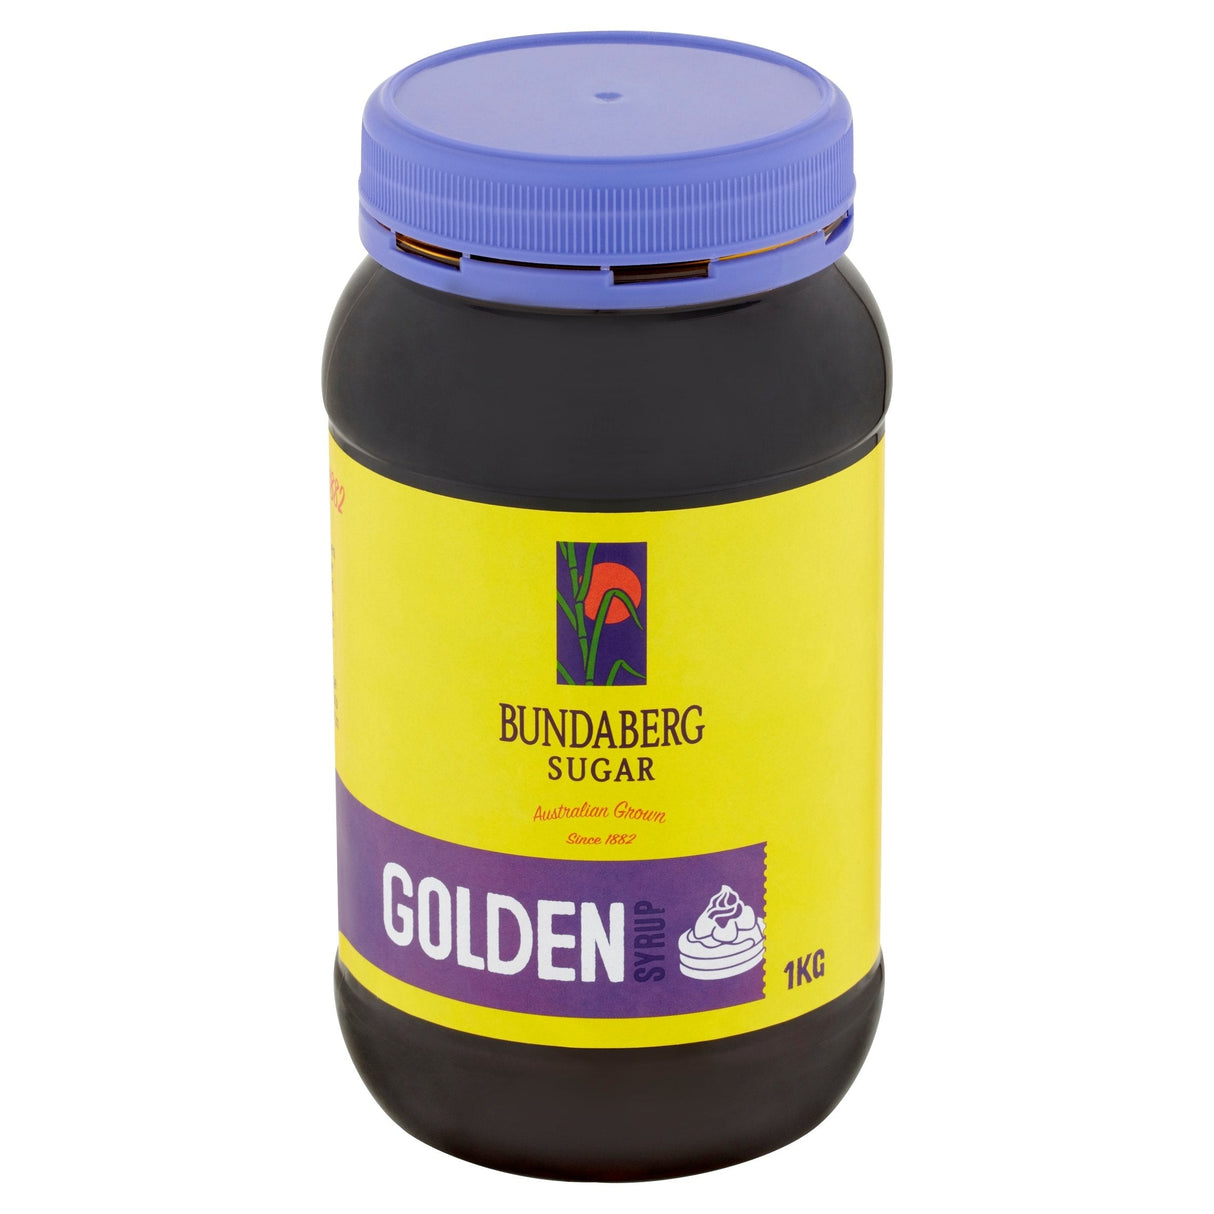 Bundaberg Sugar Golden Syrup 1kg